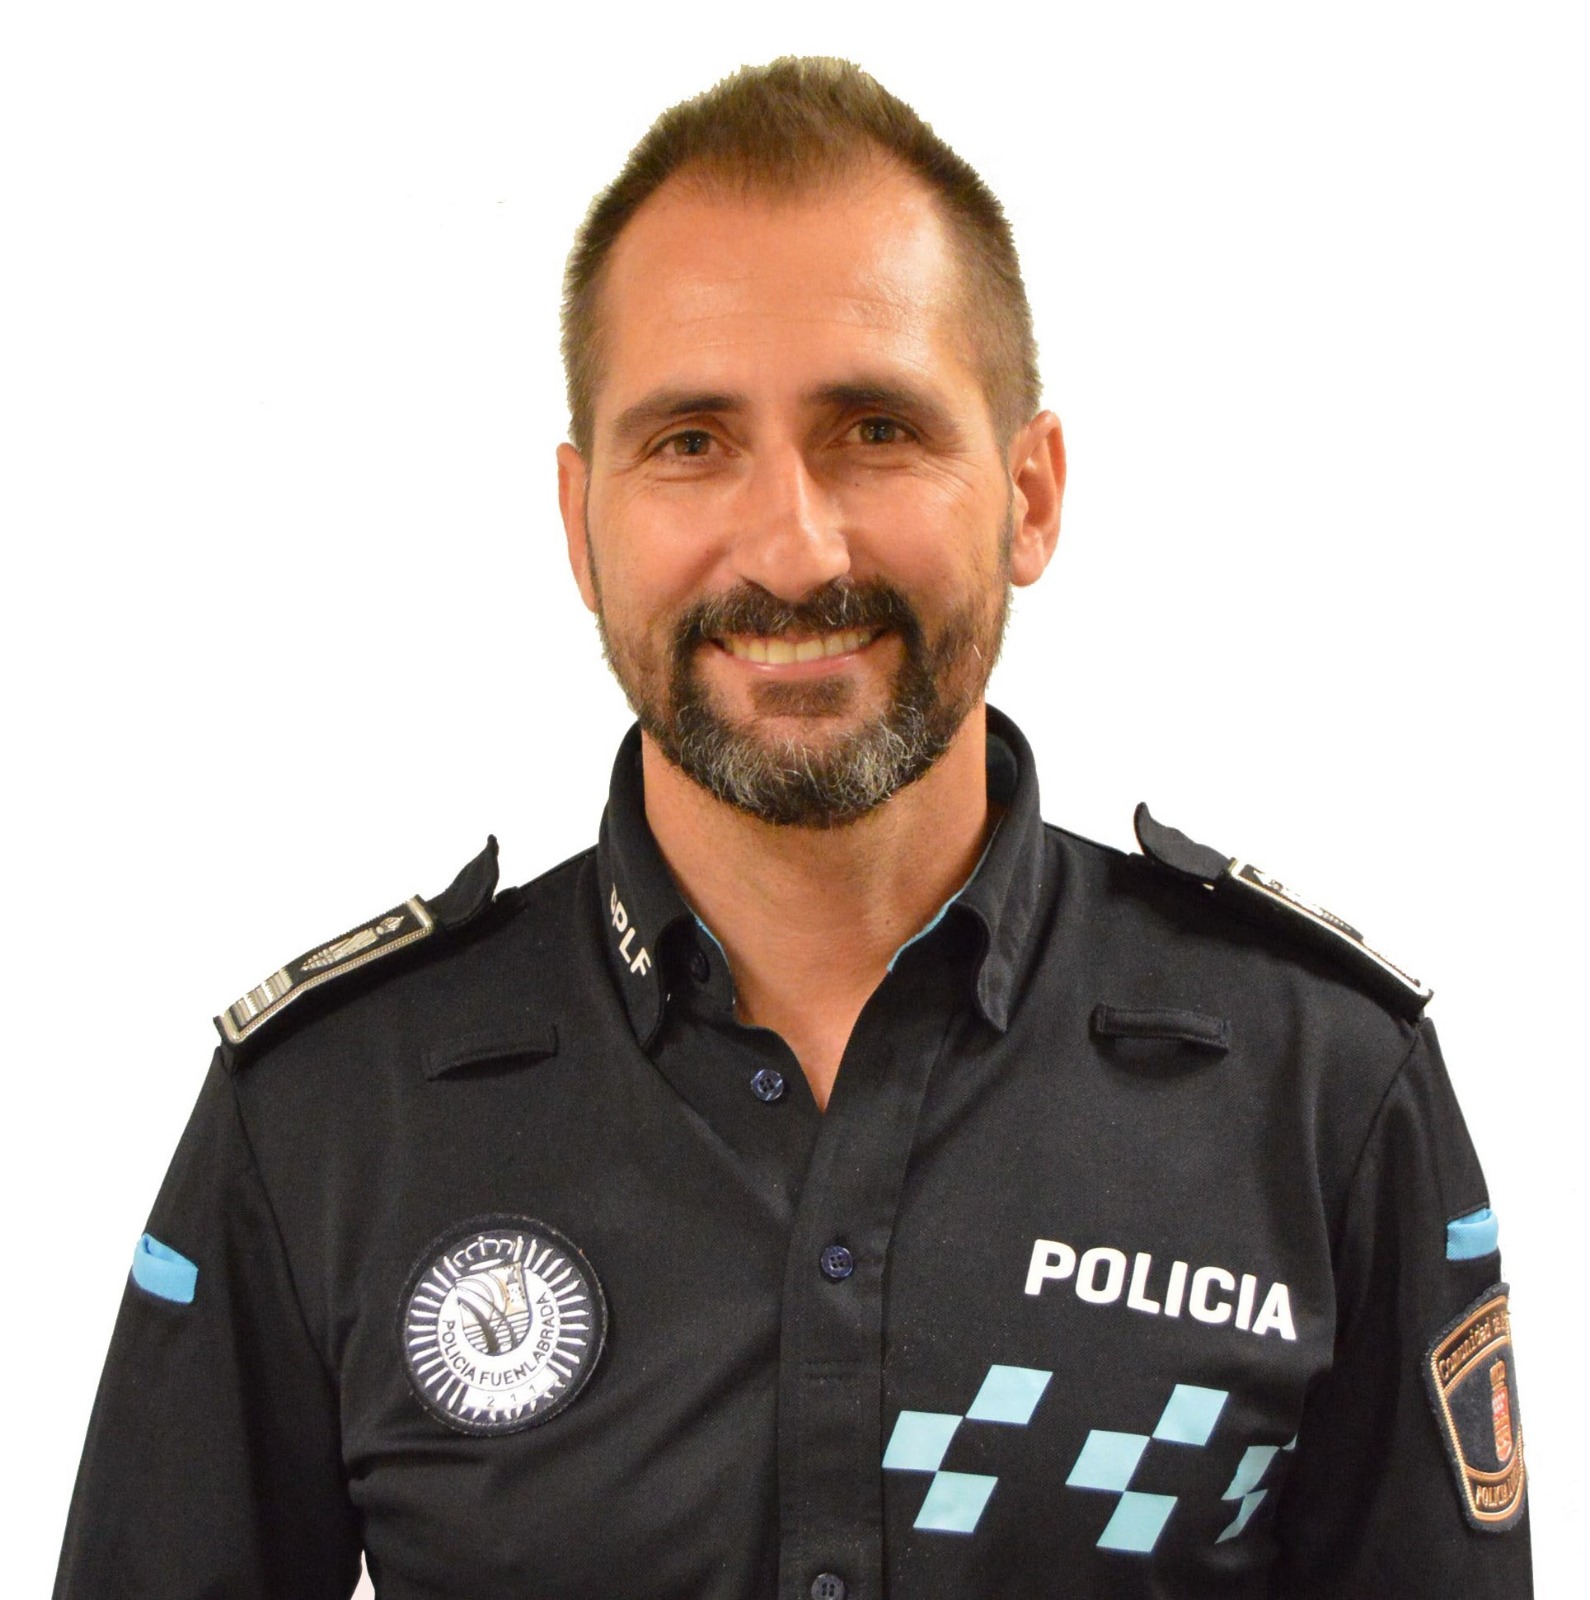 David MARTÍN ABÁNADES, Local Police Inspector, Fuenlabrada Police Service, Spain